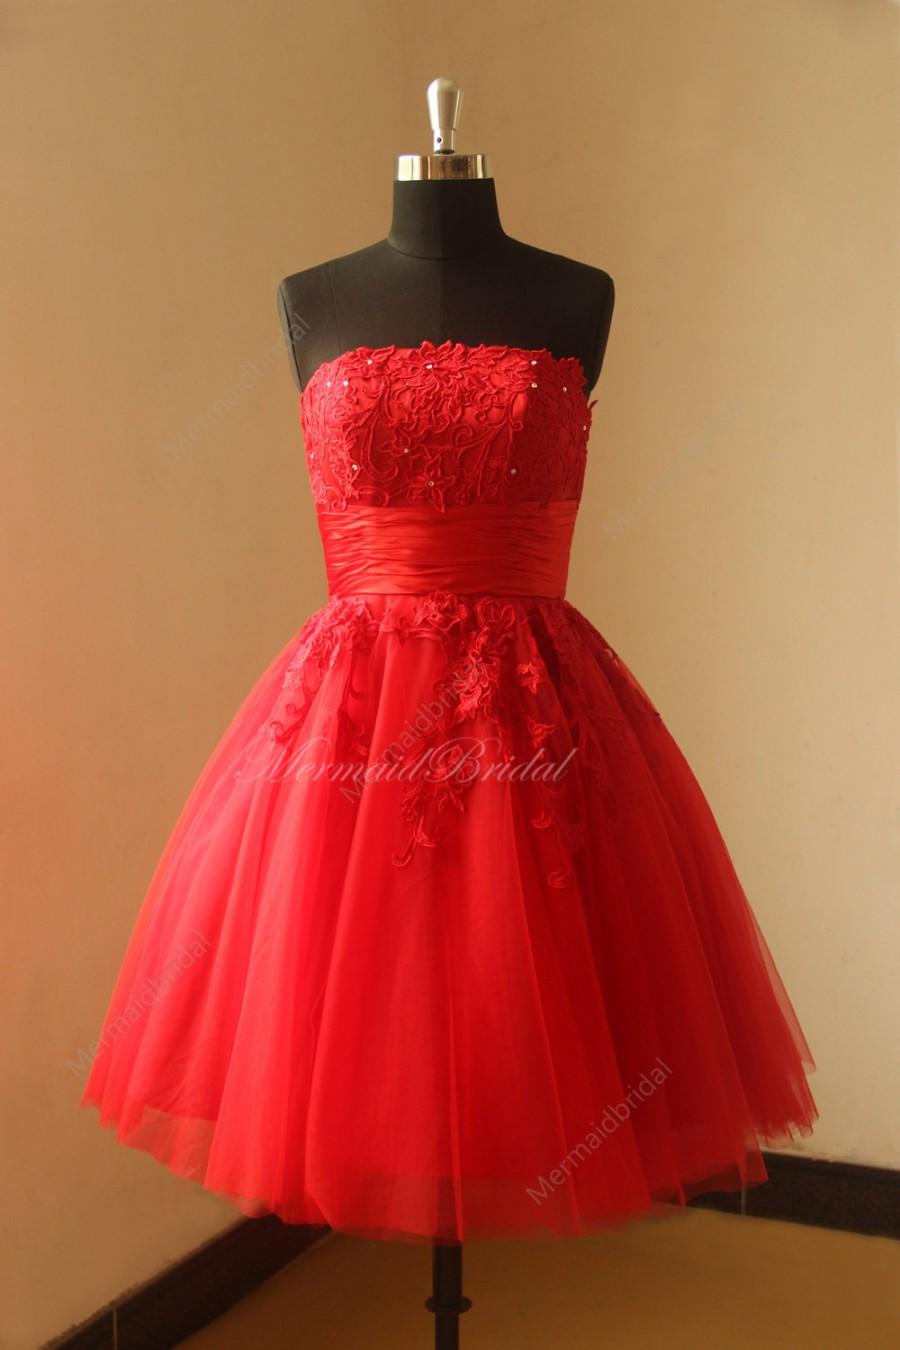 زفاف - Red tea lenghth ball gown vintage lace wedding dress with corset back